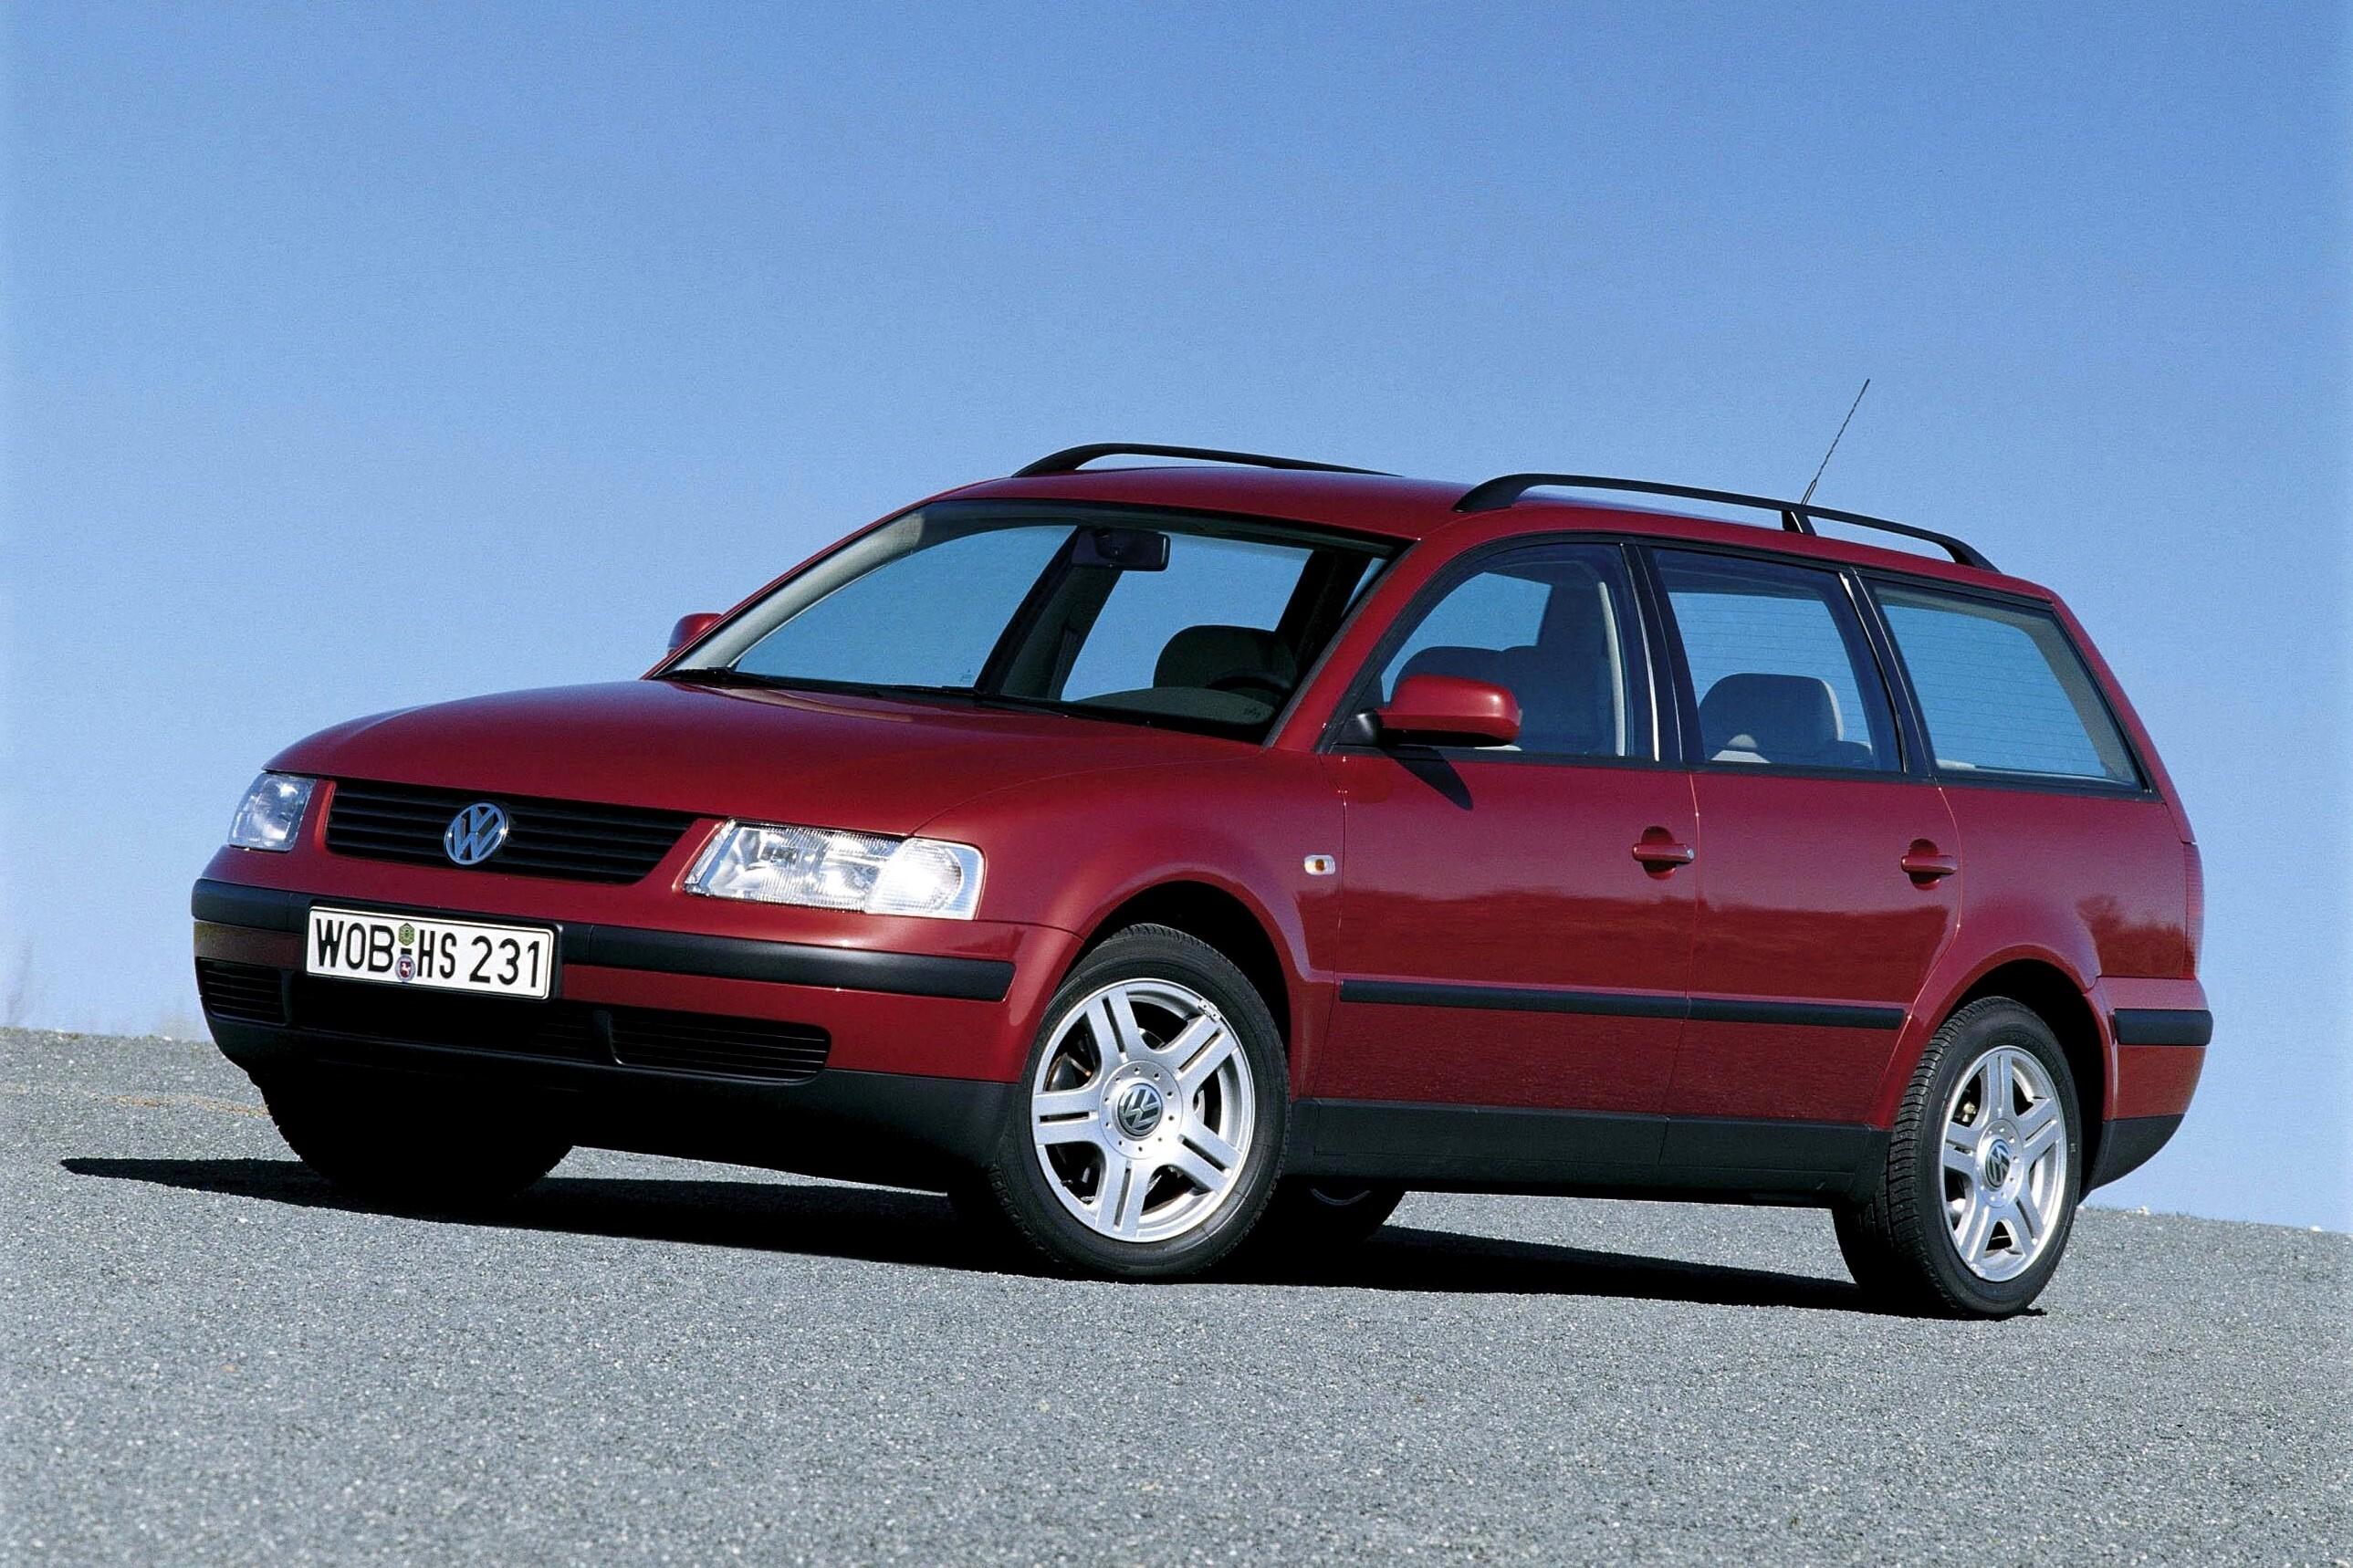 Машины фольксваген универсал. Volkswagen Passat универсал. Фольц Ваген Пасат универсал. Фольксваген Пассат 1997 универсал. Volkswagen Passat b5 2005 универсал.